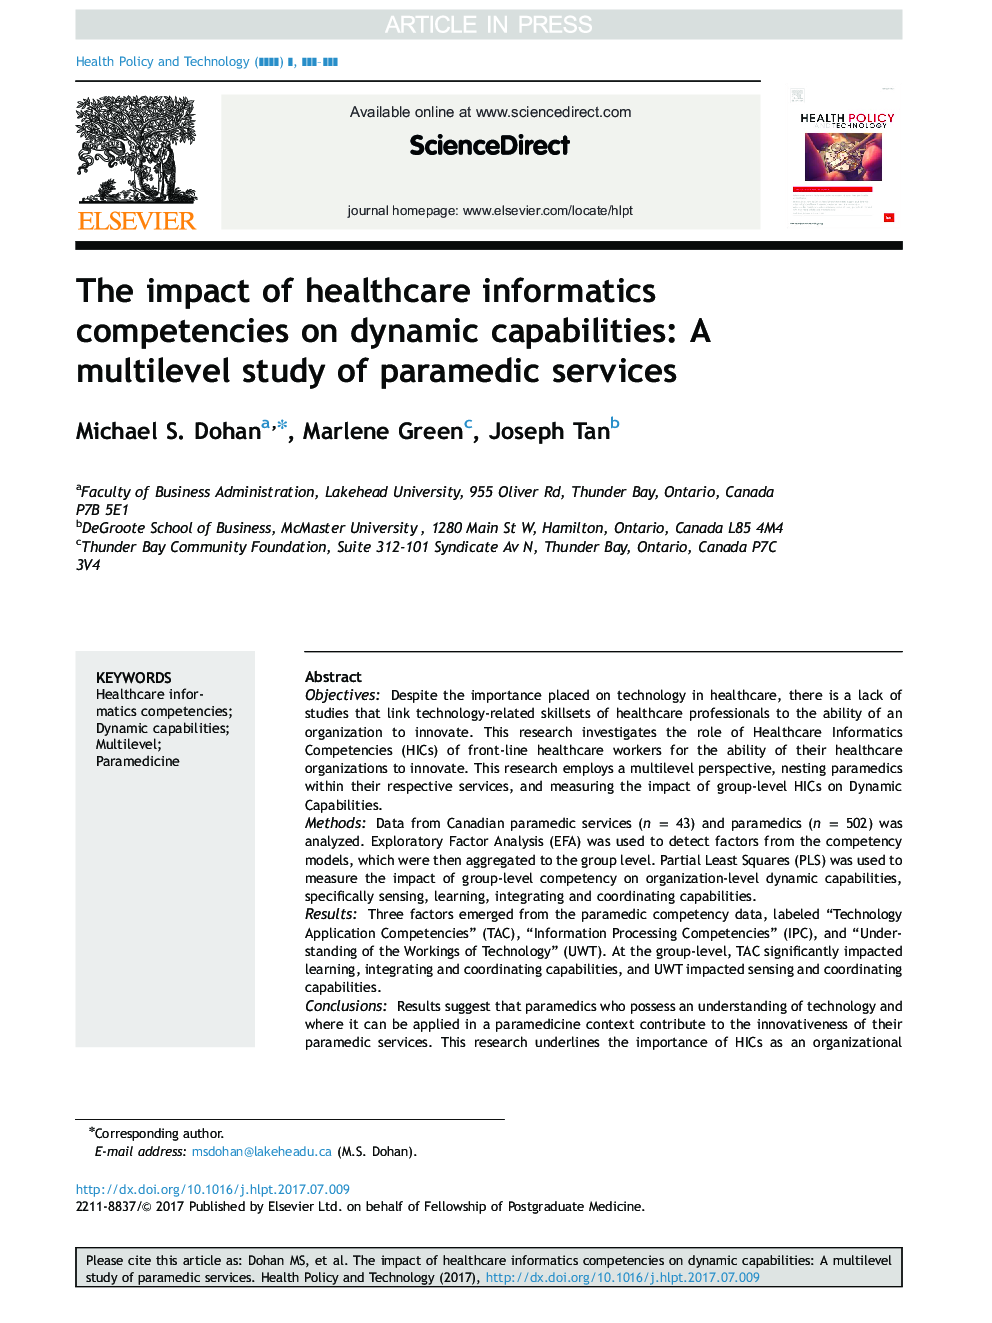 تأثیر صلاحیت های فناوری اطلاعات سلامت بر توانایی های پویا: مطالعه چند مرحله ای خدمات فراملی 